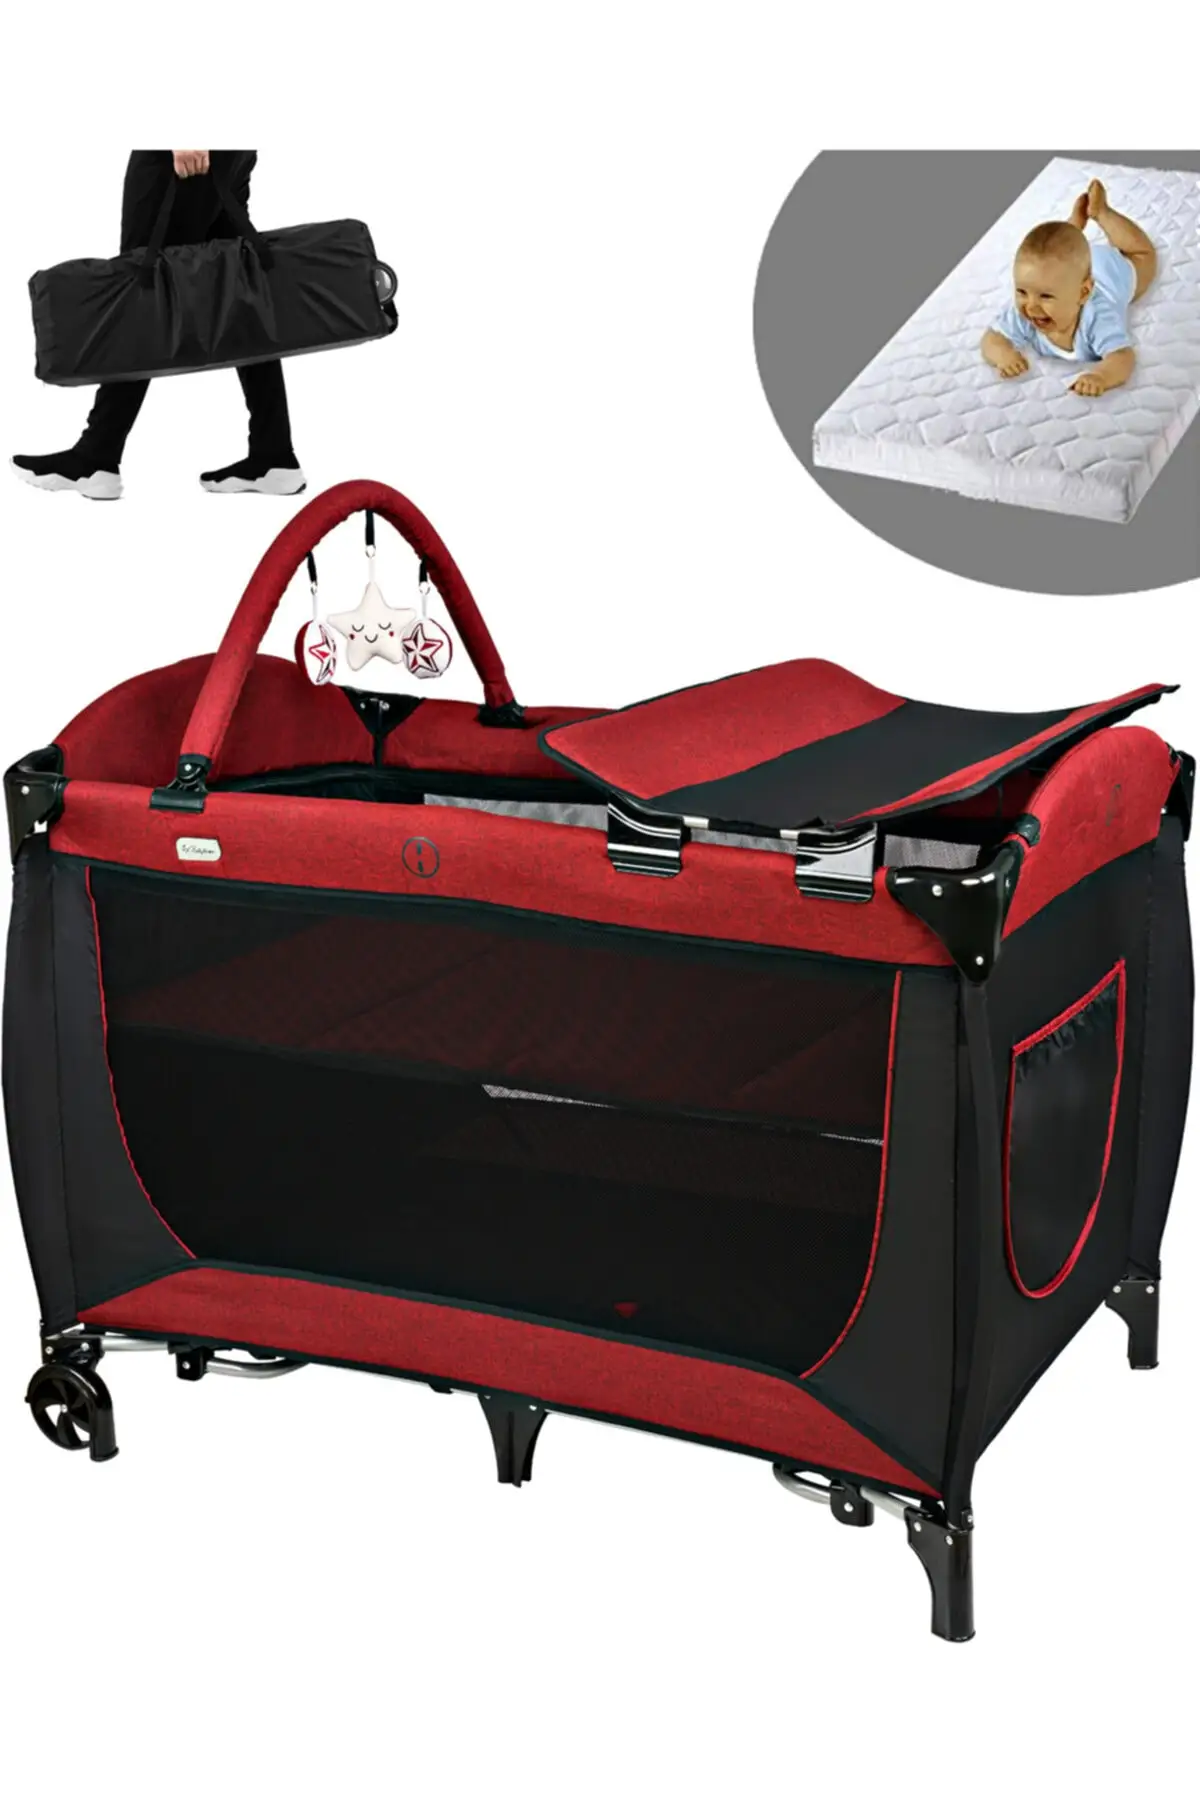 560 Golite 70x110 Baby Playpen Bed Basket Cradle Sponge Bed Gift